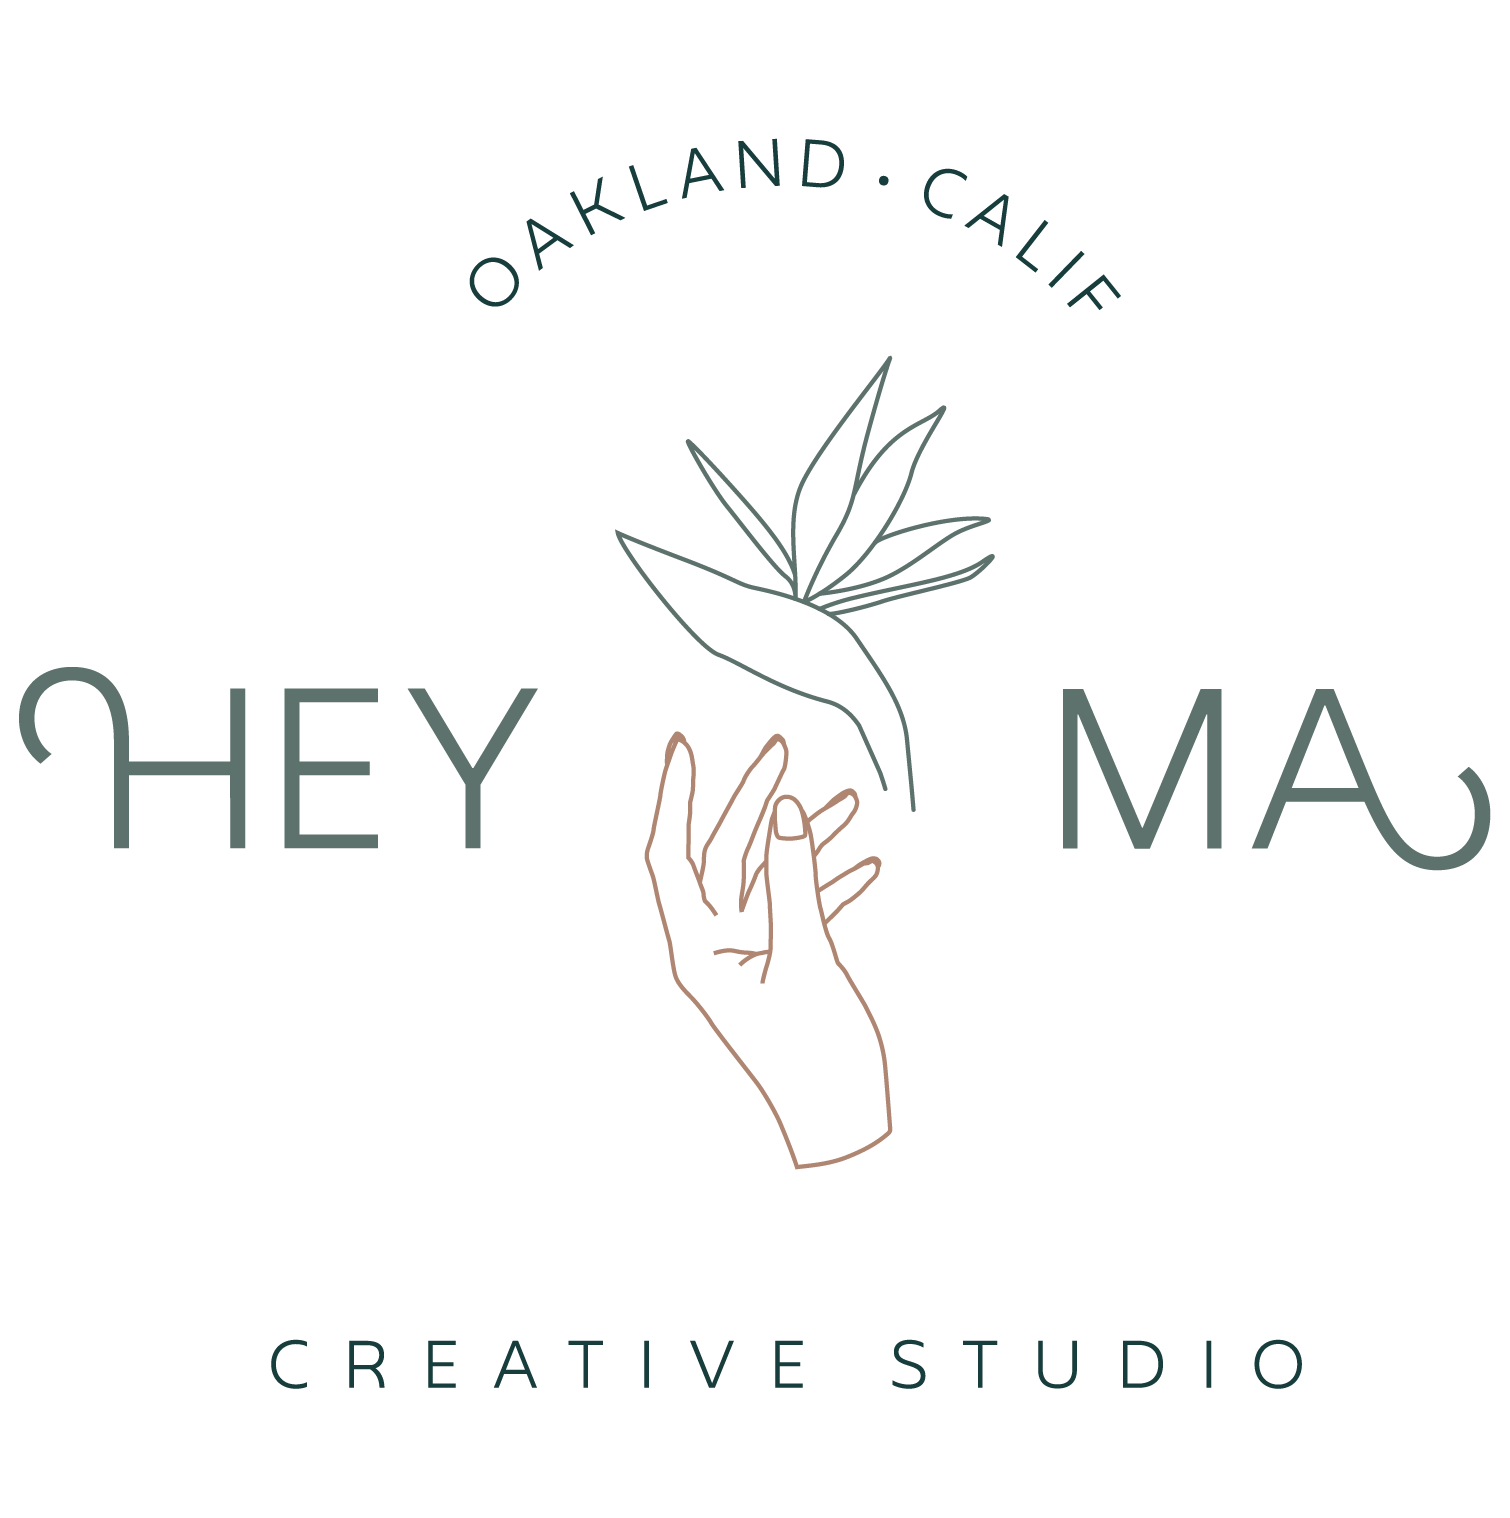 Hey Ma Creative Studio